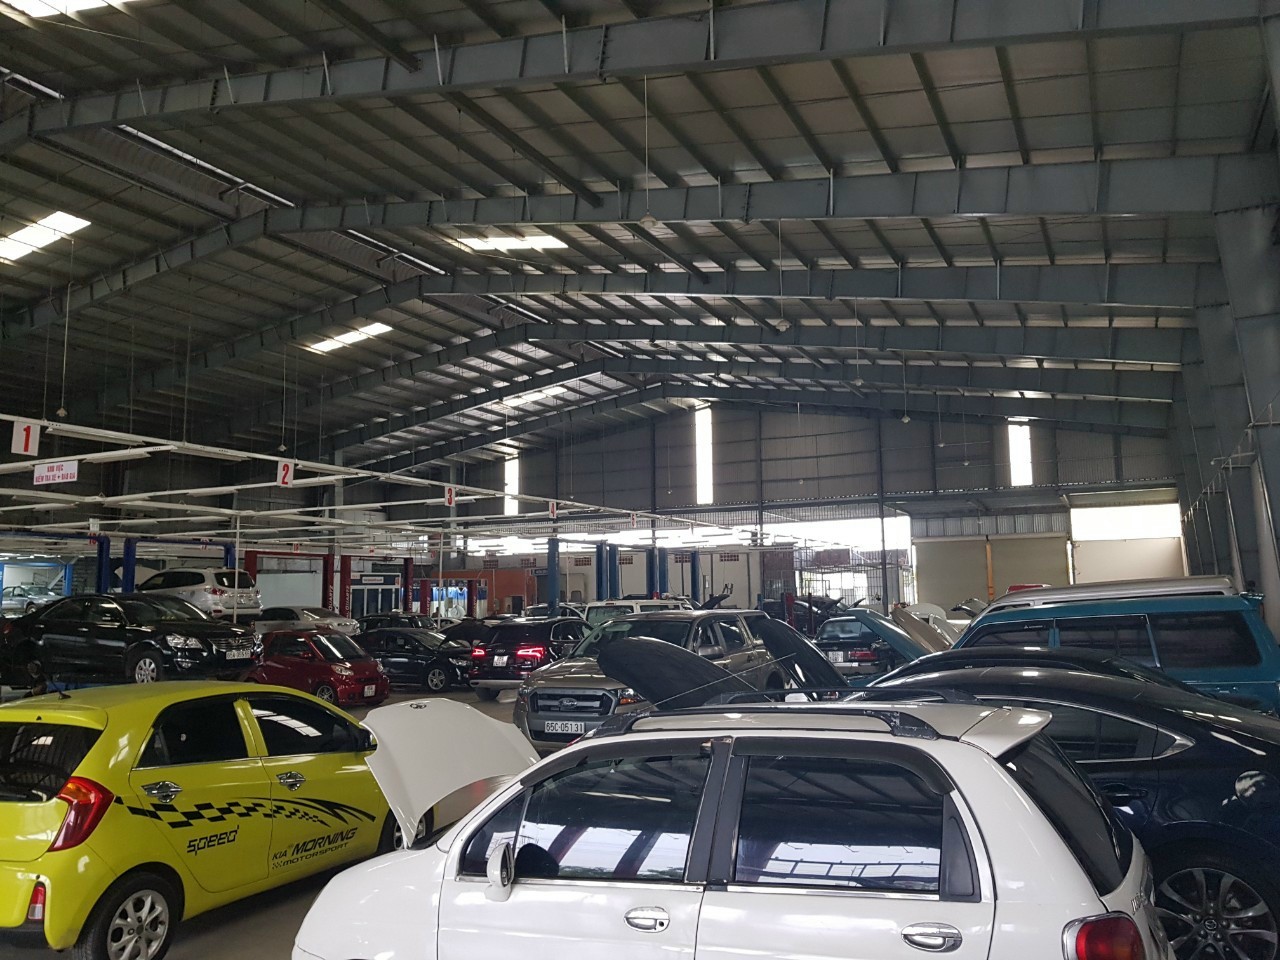 Top 6 XưởngGara sửa chữa ô tô uy tín và chất lượng ở Cần Thơ  toplistvn